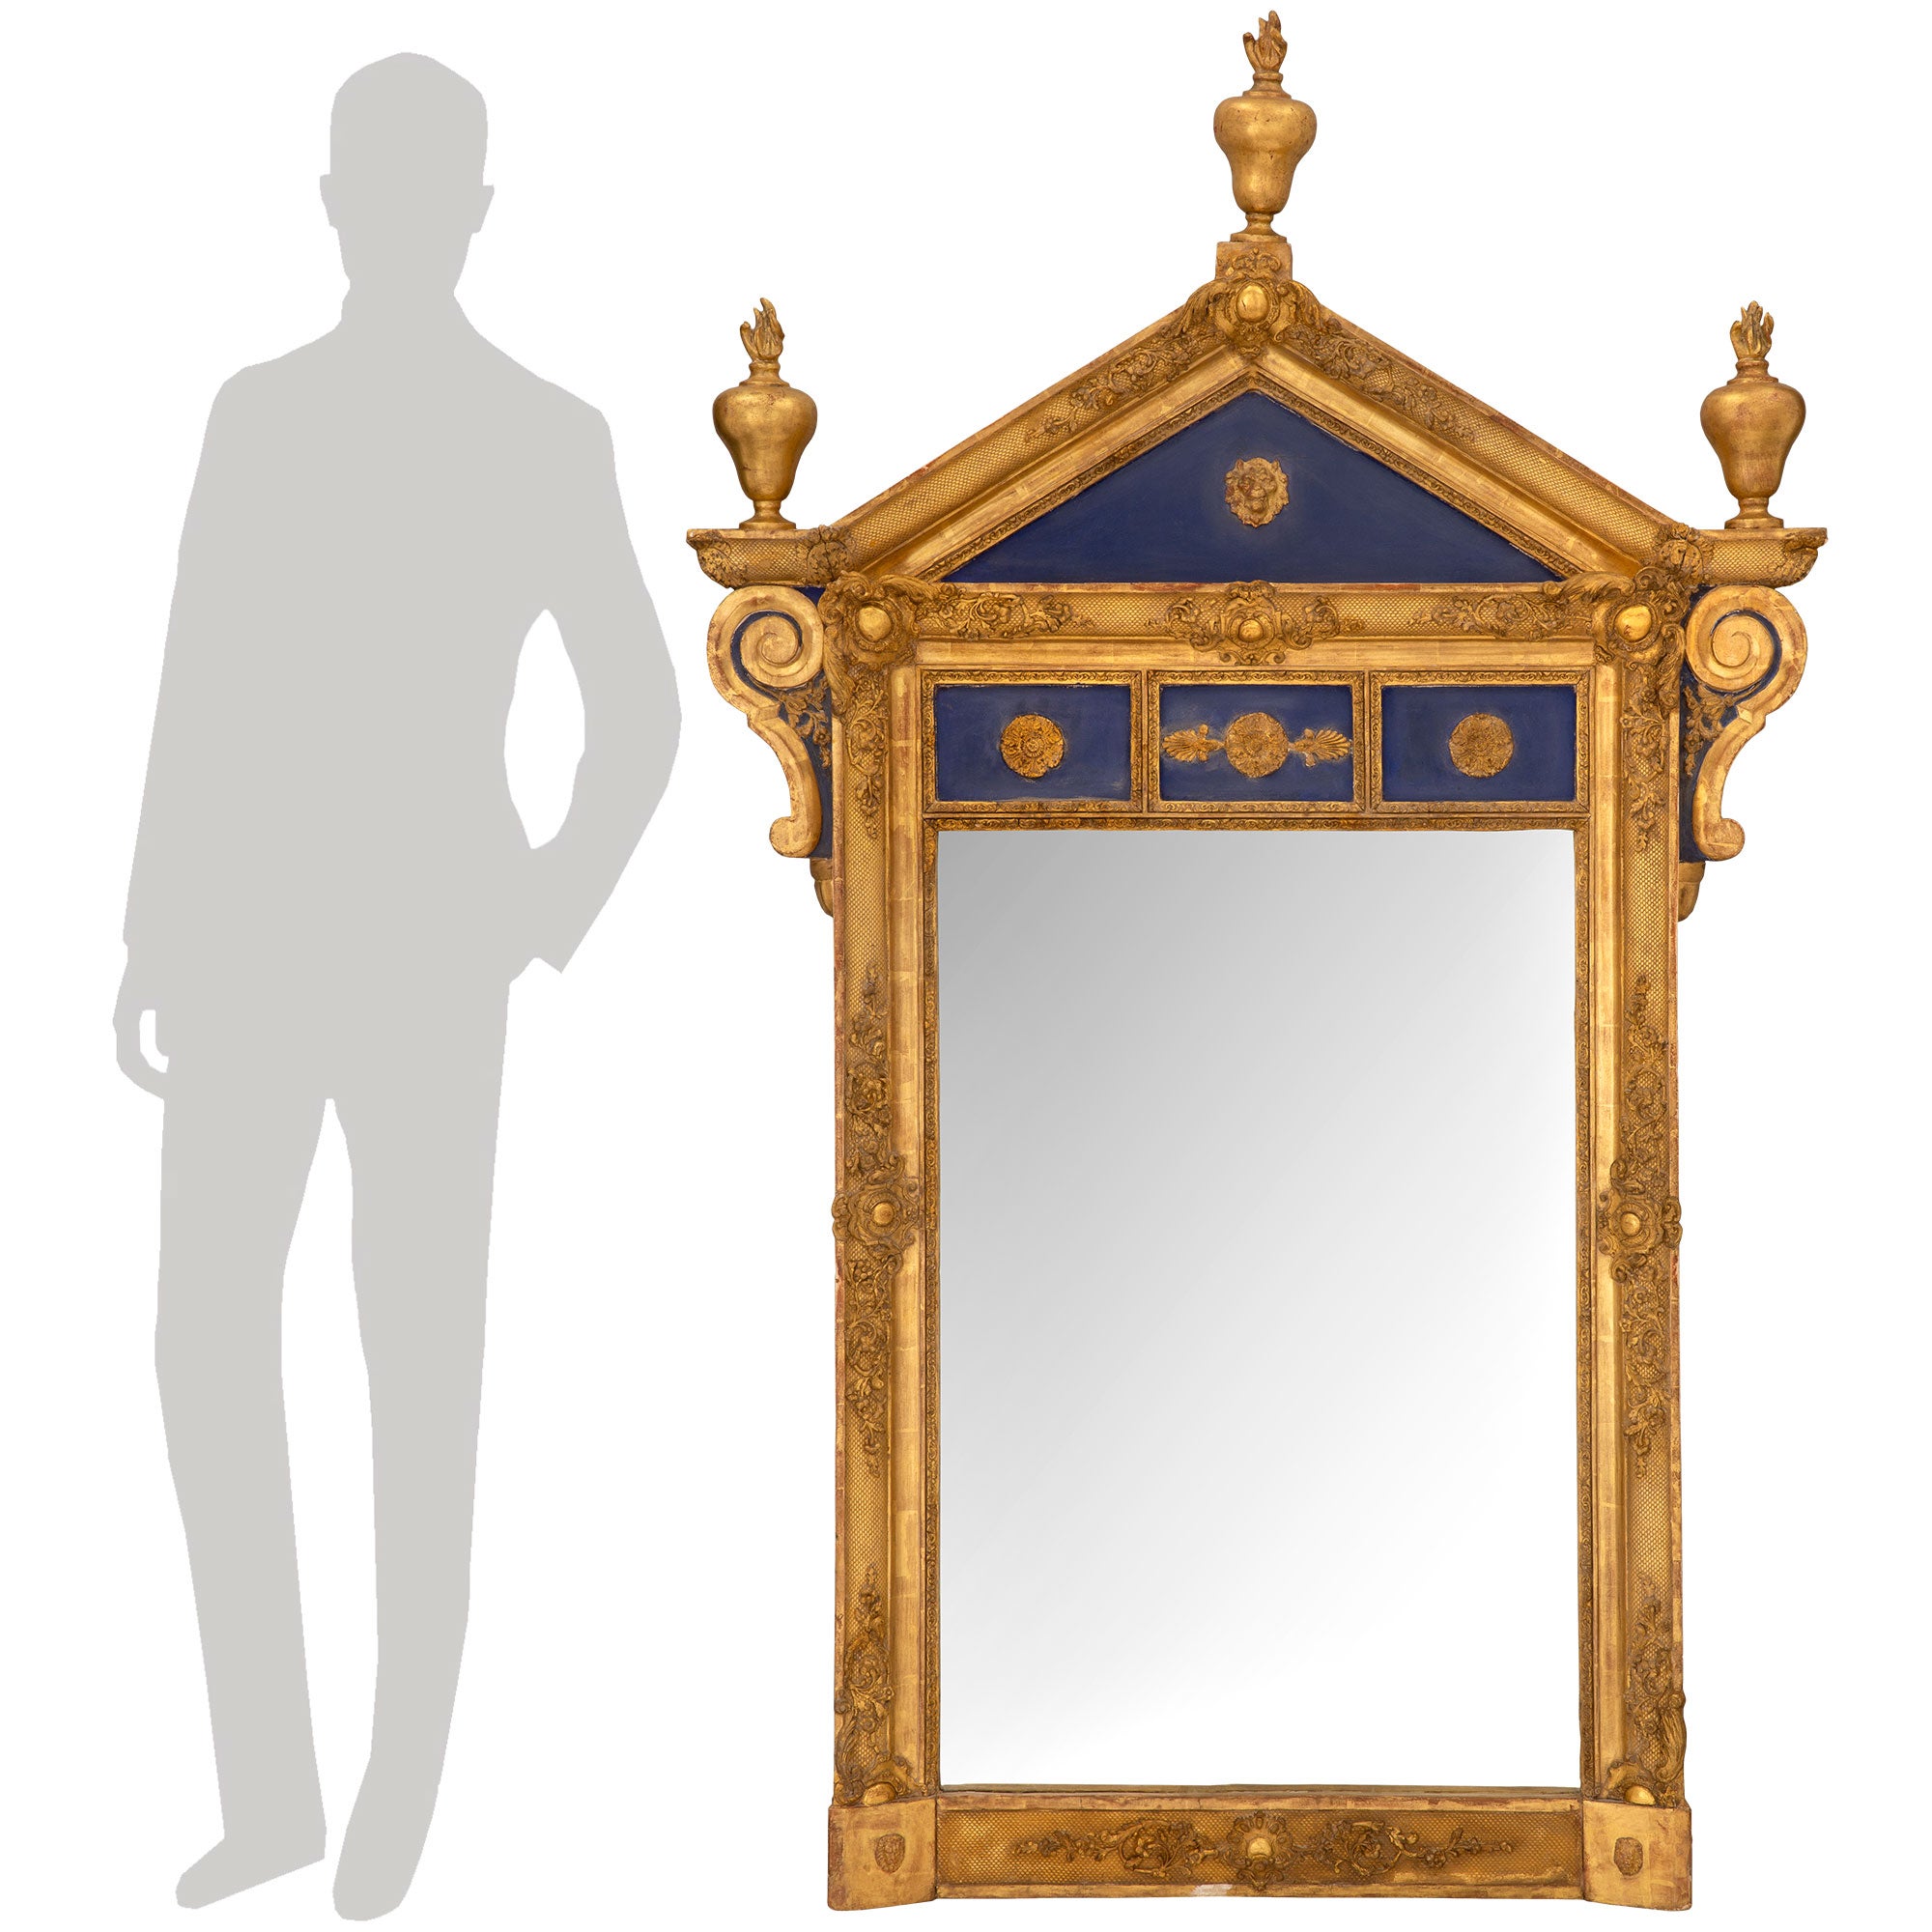 Miroir architectural et très élégant de style néo-classique italien du XIXe siècle en bois doré et bleu cobalt patiné. La plaque de miroir d'origine est enchâssée dans une belle bordure épaisse et mouchetée décorée de charmantes réserves de